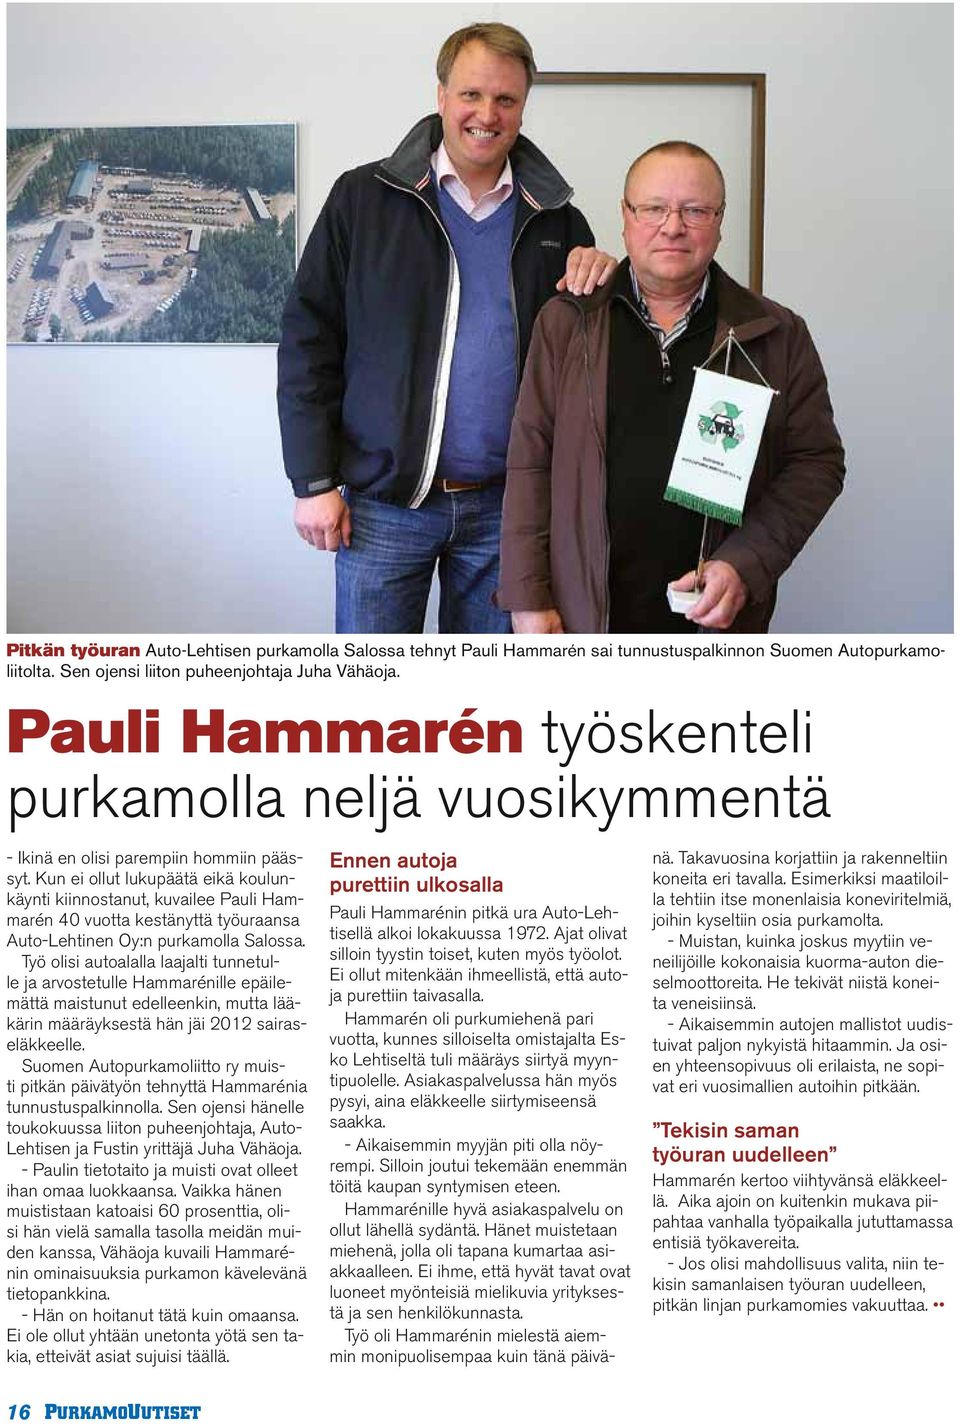 Kun ei ollut lukupäätä eikä koulunkäynti kiinnostanut, kuvailee Pauli Hammarén 40 vuotta kestänyttä työuraansa Auto-Lehtinen Oy:n purkamolla Salossa.